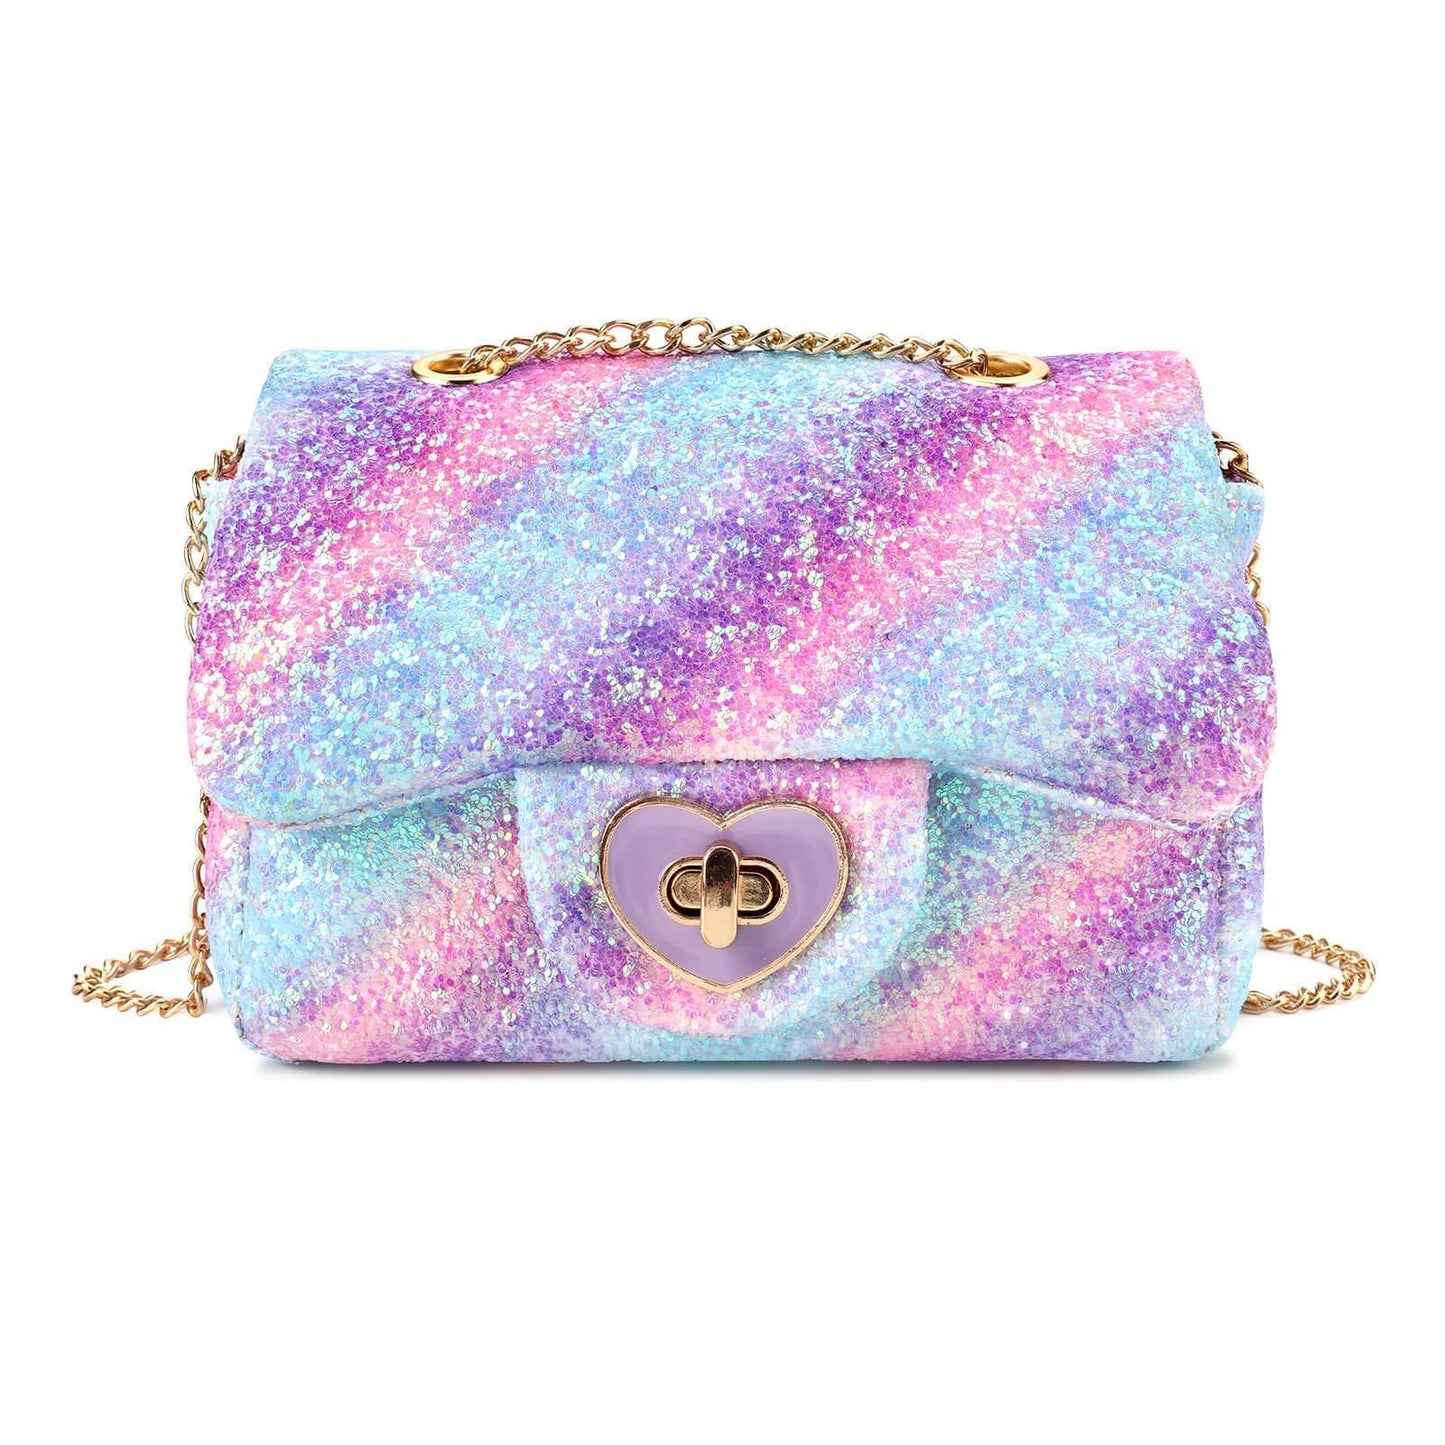 Rita-Glitter Mini Purse Crossbody Bag Mibasies fl purple 